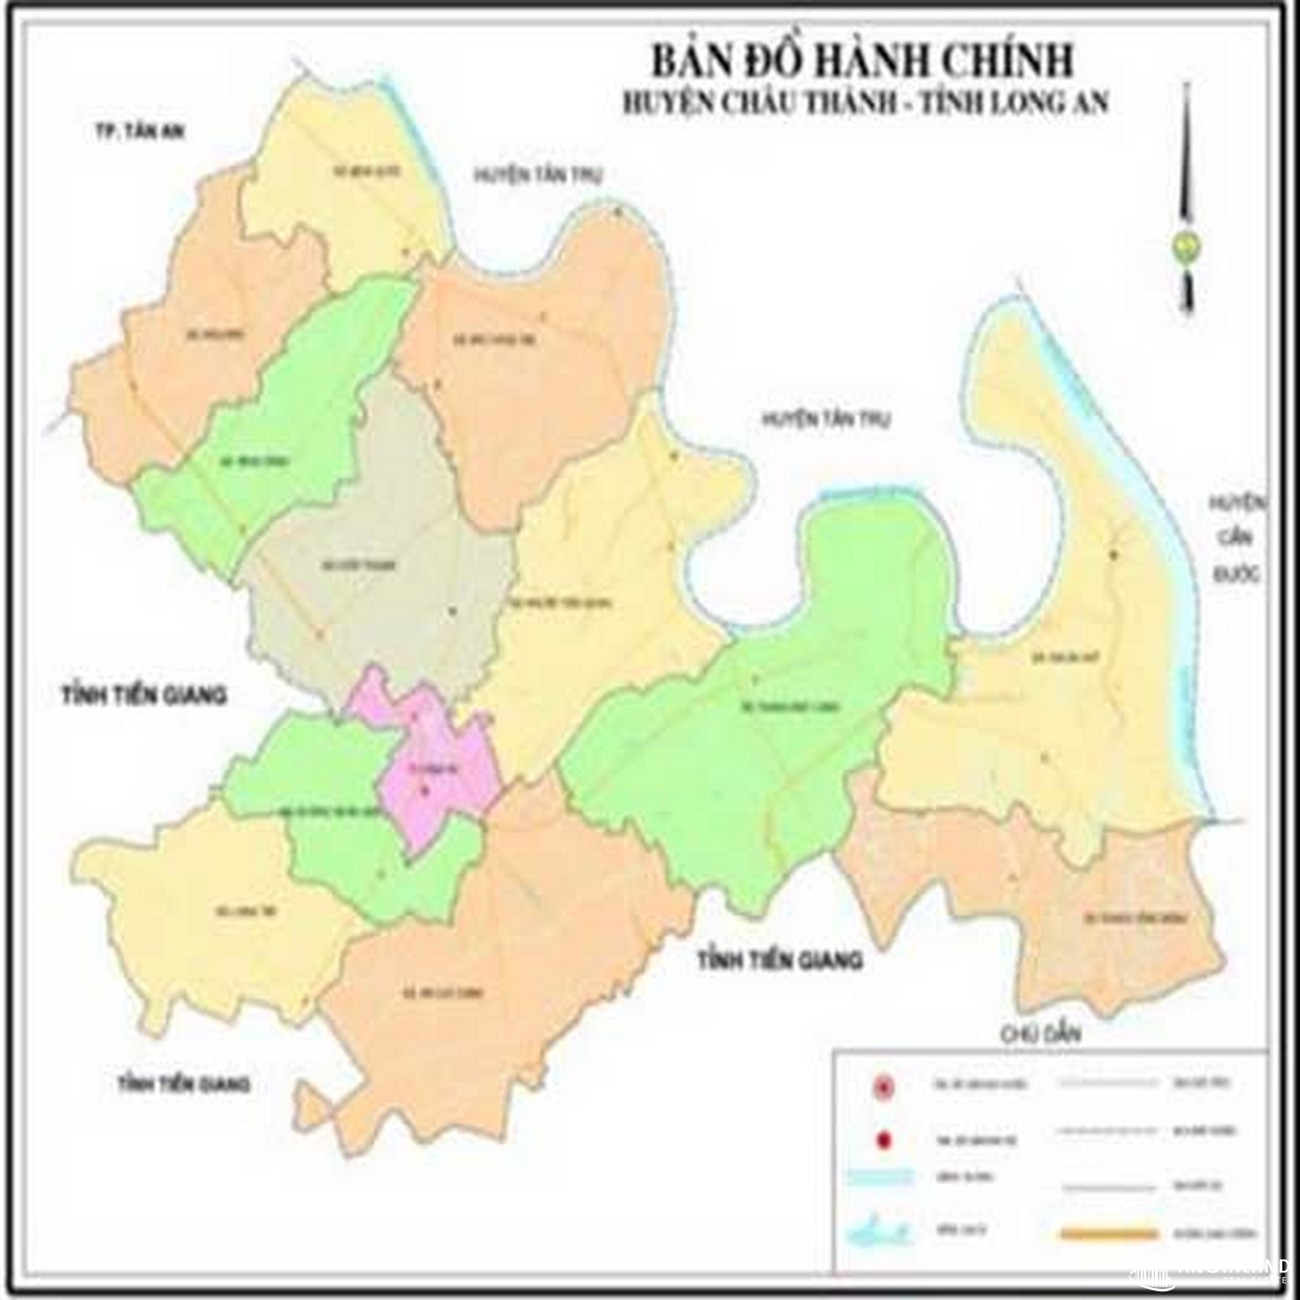 Bản đồ hành chính huyện Châu Thành Long An